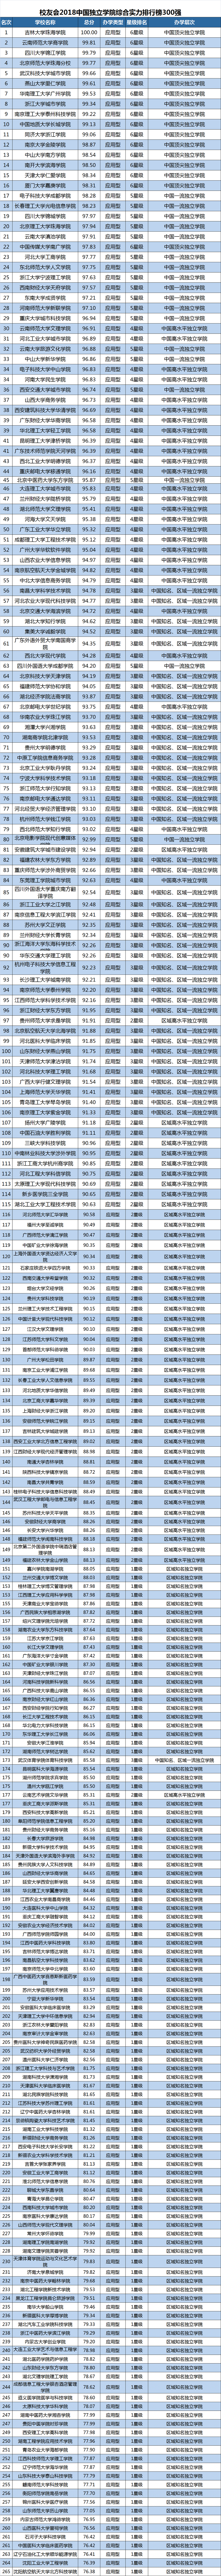 中国最好的大学 - 392所野鸡大学(3) 教育 热图10